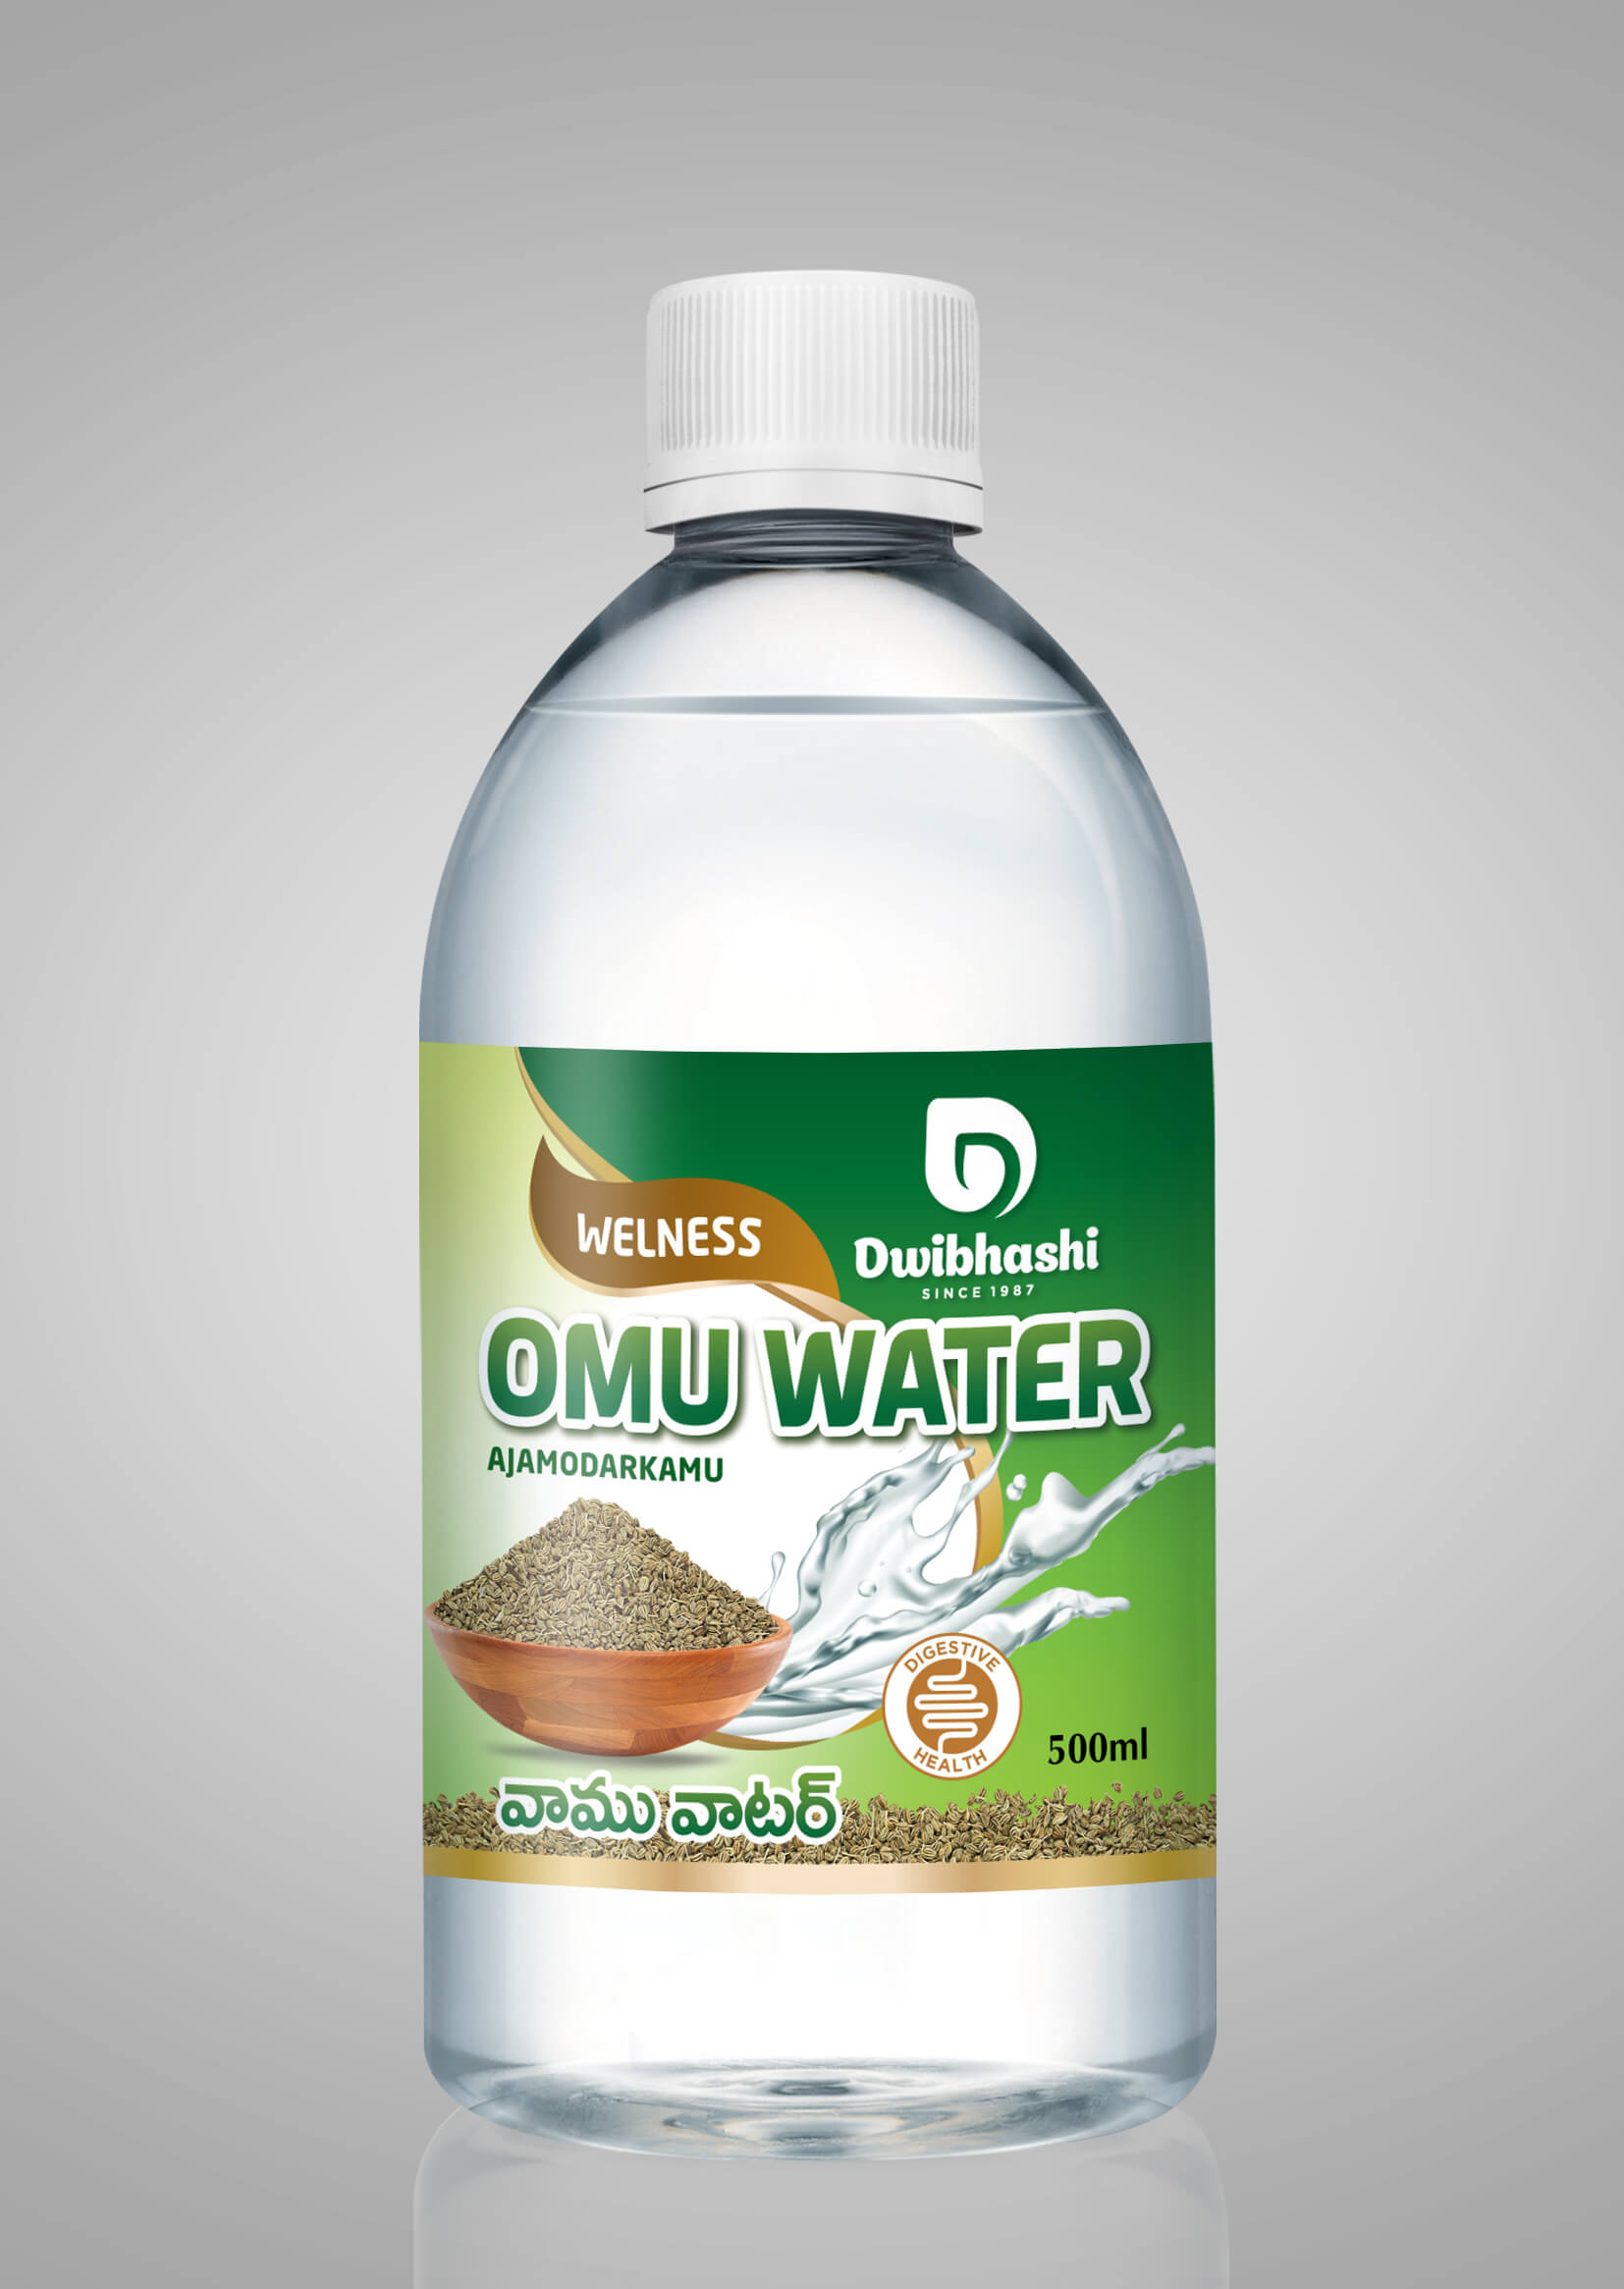 Buy Omu Water Online